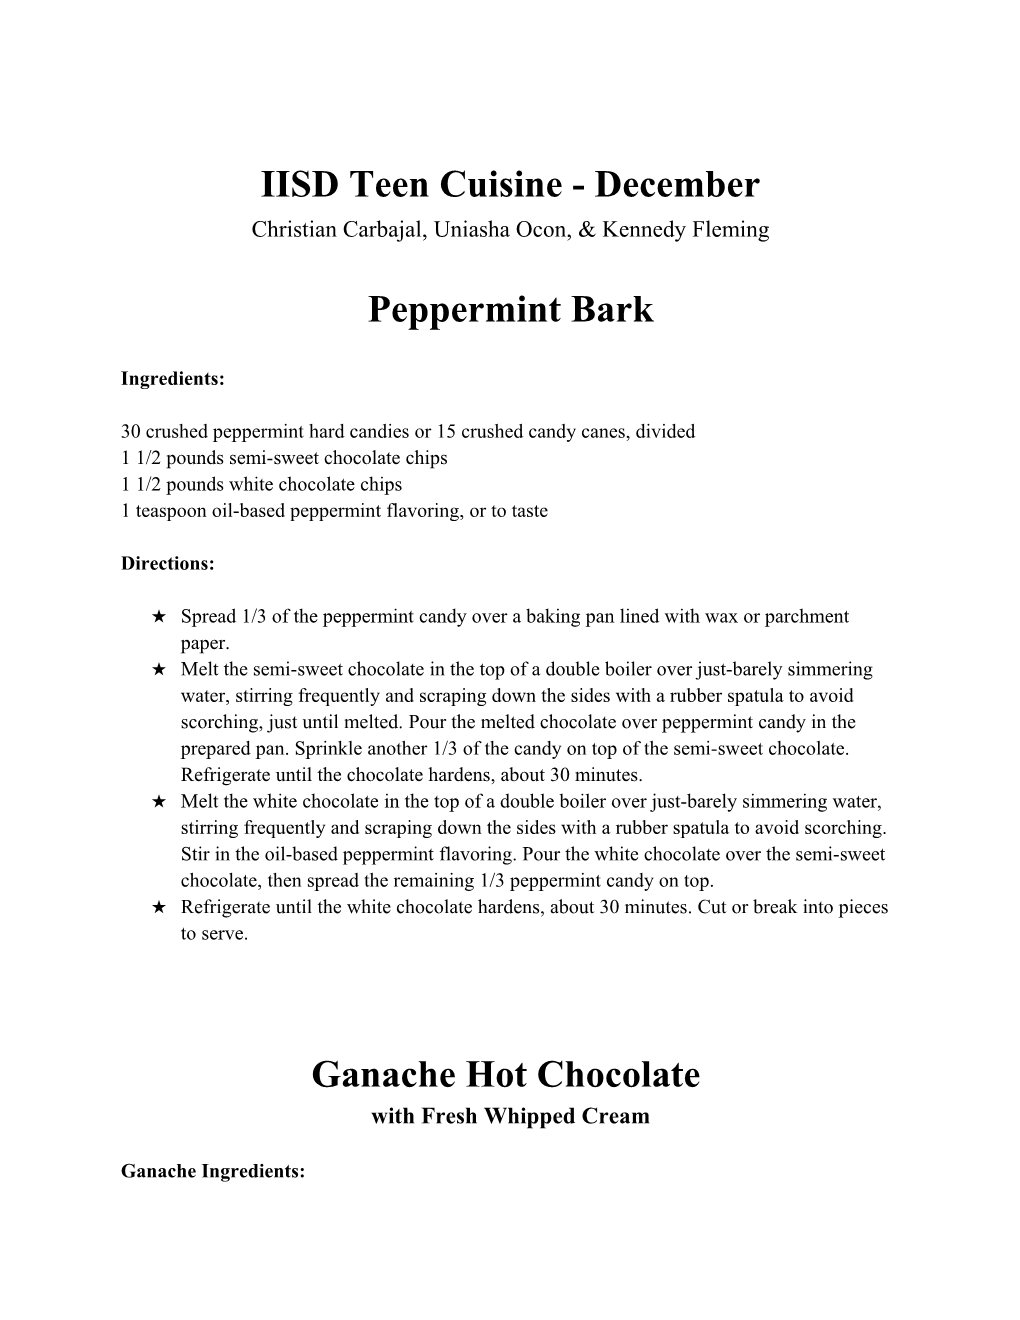 IISD Teen Cuisine - December